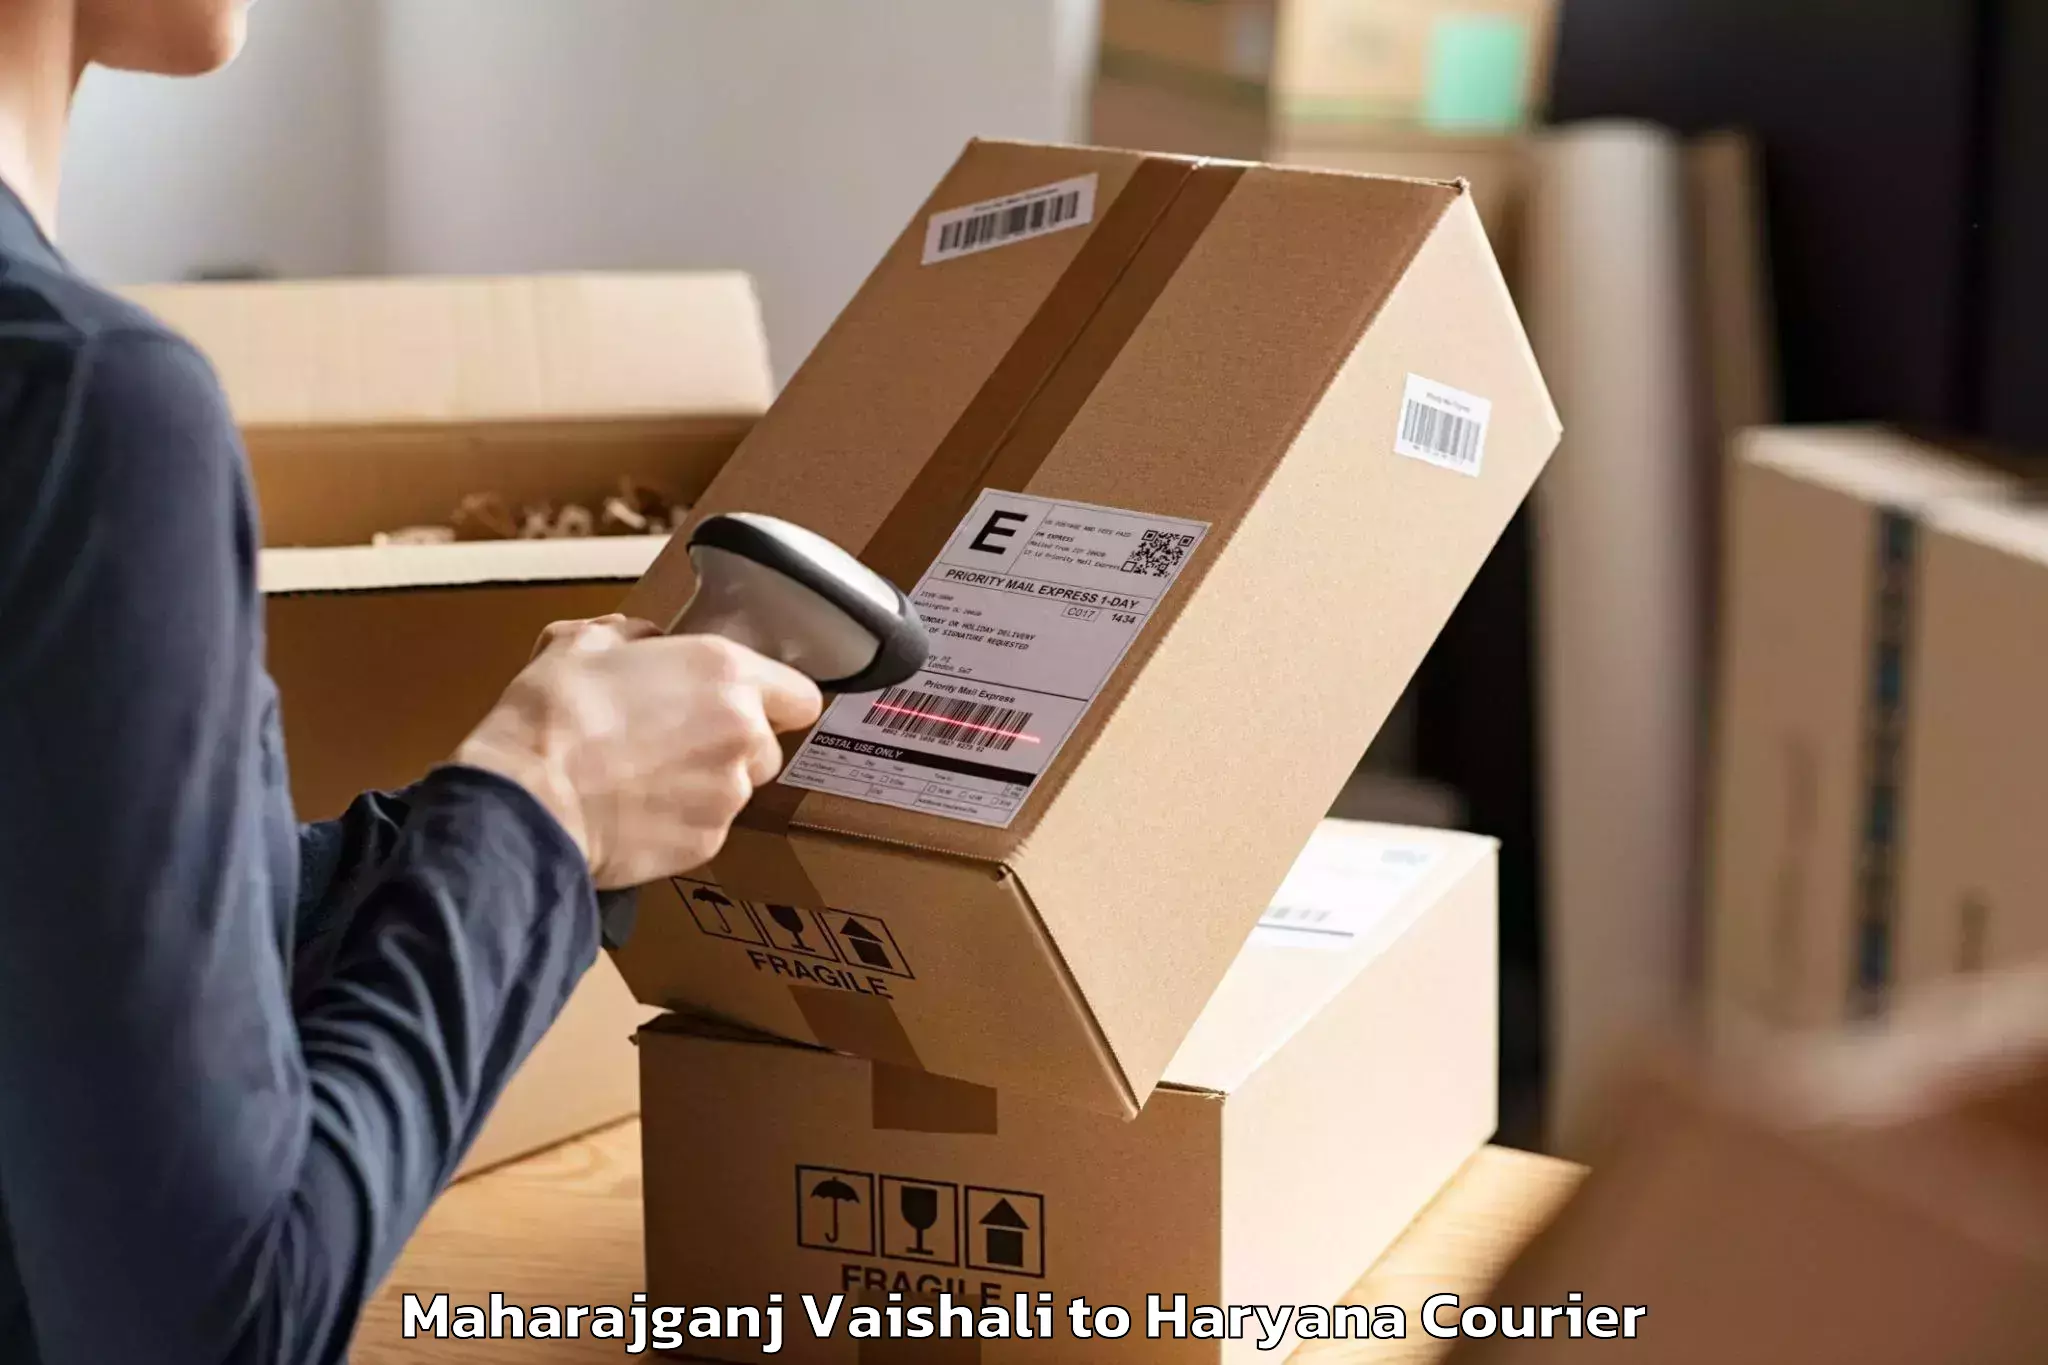 Home goods moving company Maharajganj Vaishali to NCR Haryana